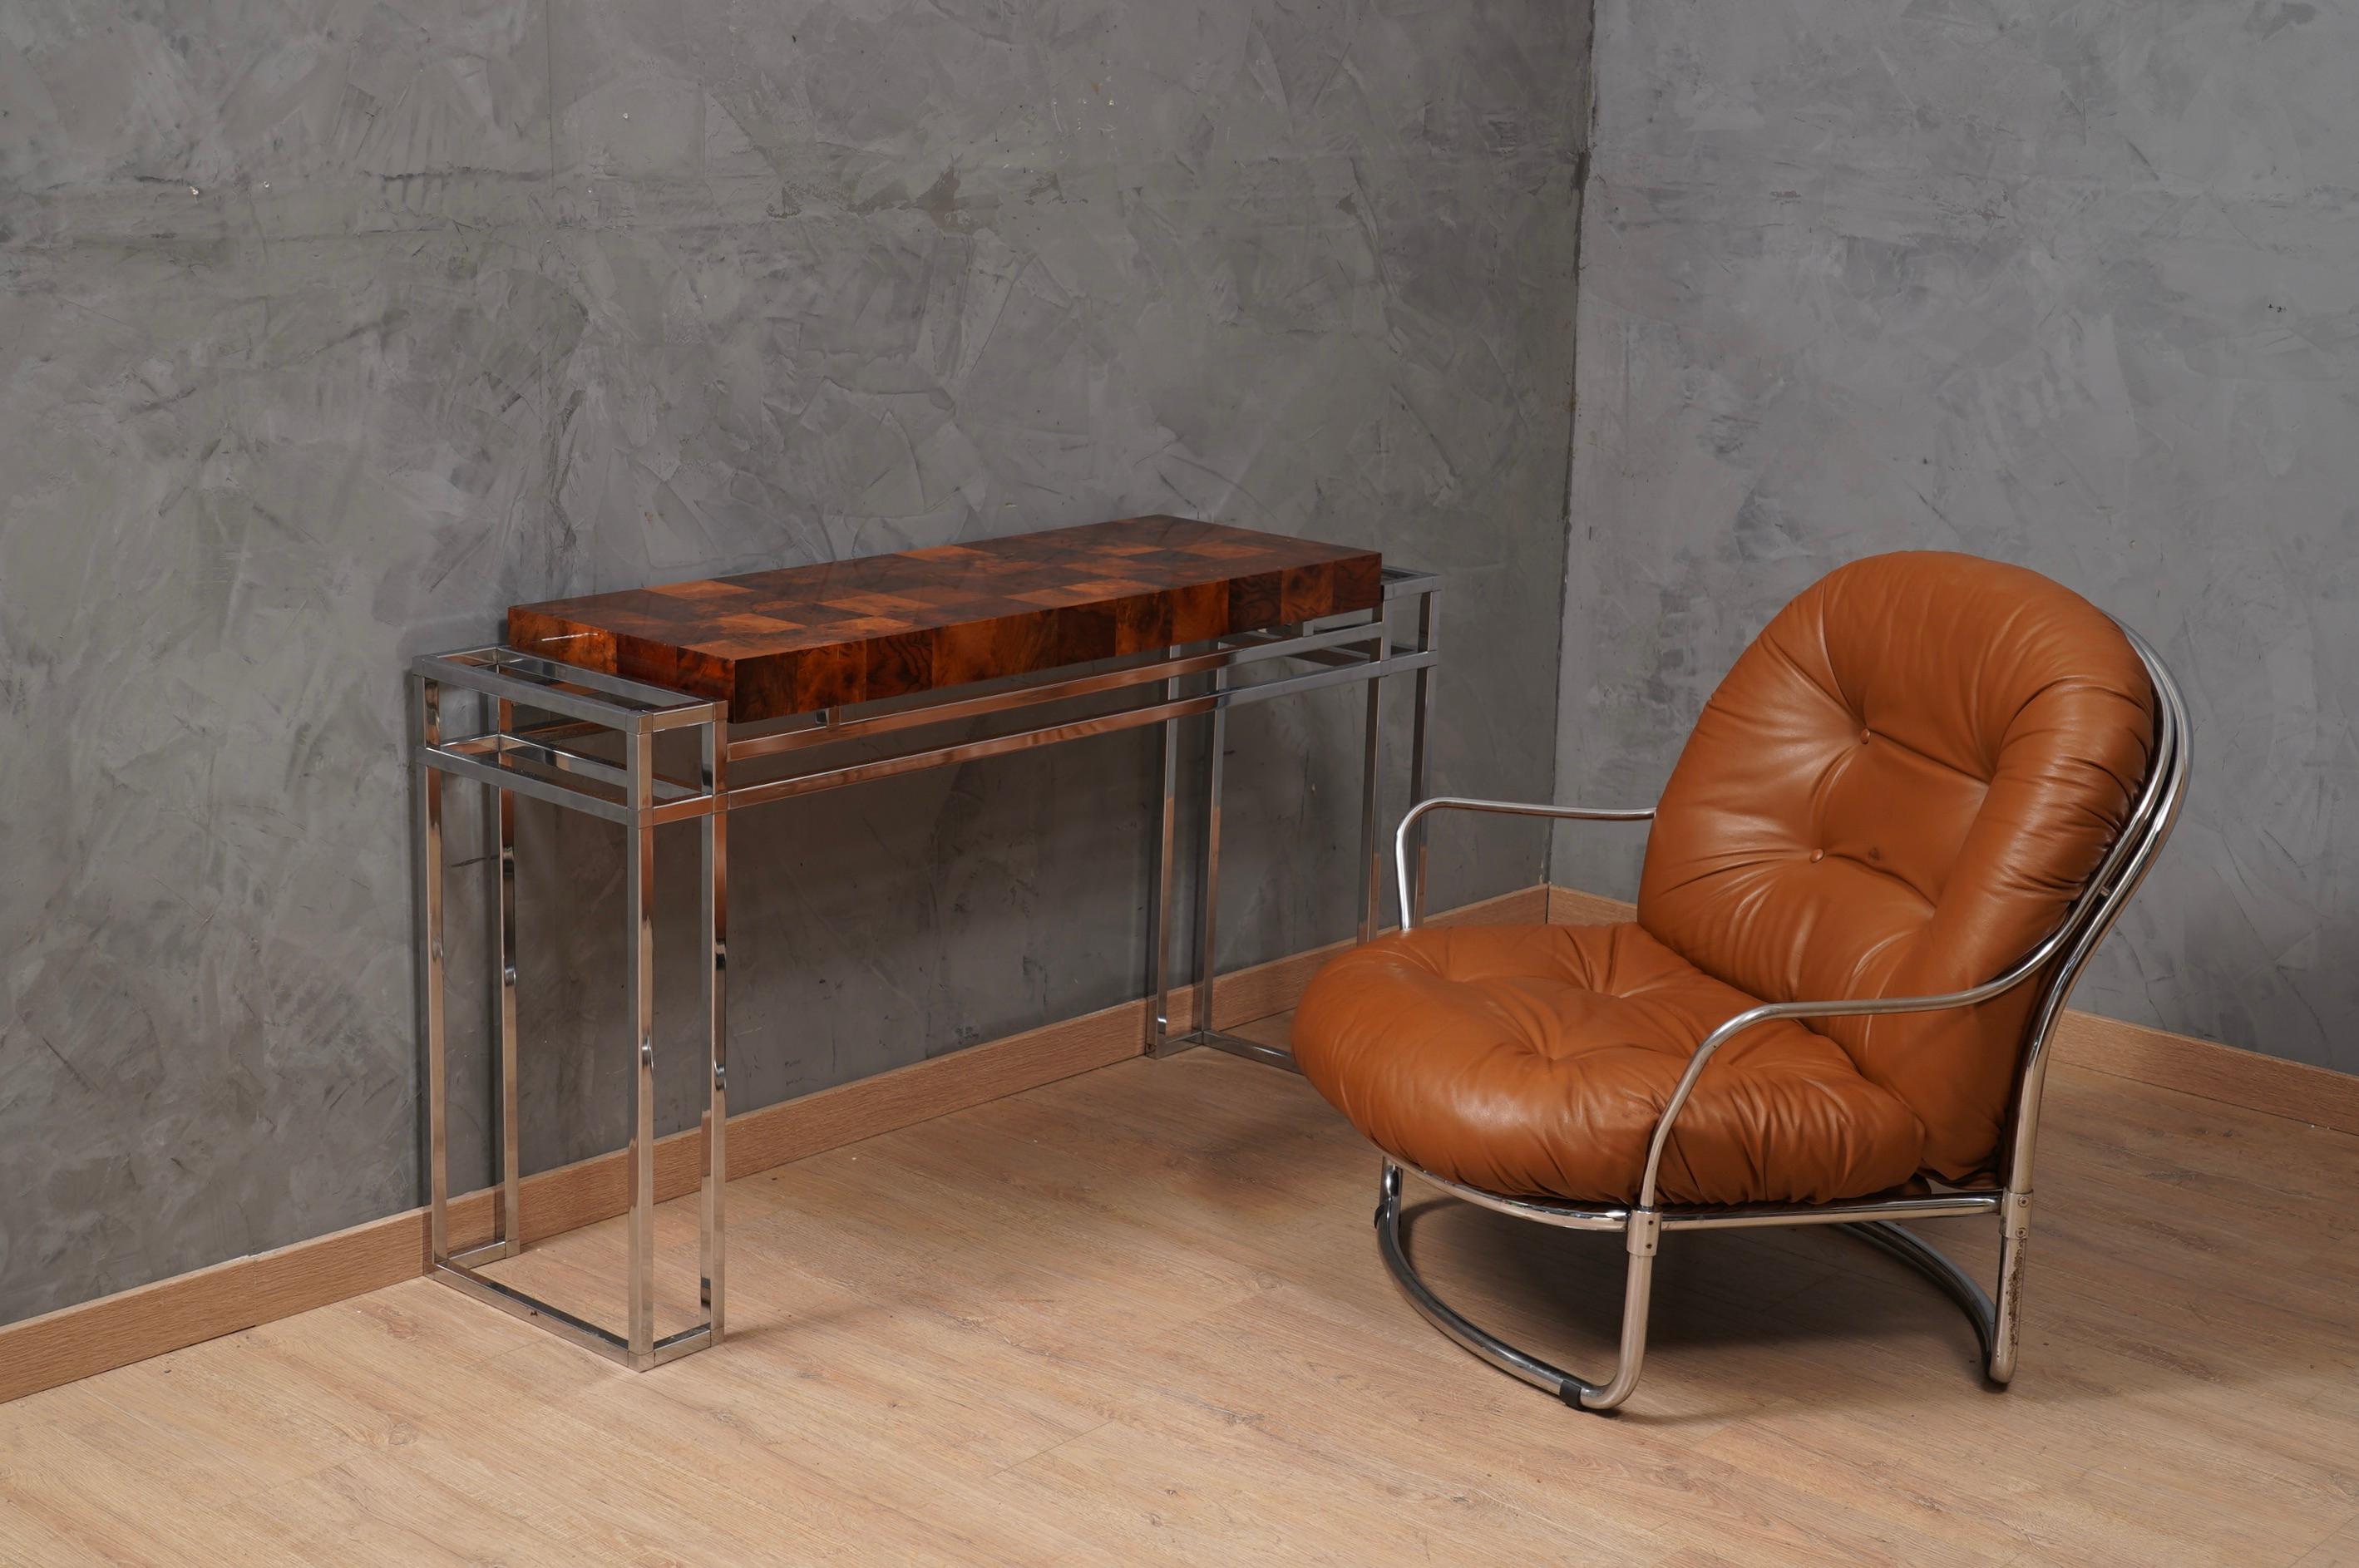 Sehr komfortabler und exquisiter Sessel mit zeitlosem Design und außergewöhnlicher Handwerkskunst in der Metall- und Lederverarbeitung. Mit seinen einzigartigen geometrischen Merkmalen zeugt die Struktur des Sessels von einer einzigartigen Liebe zum